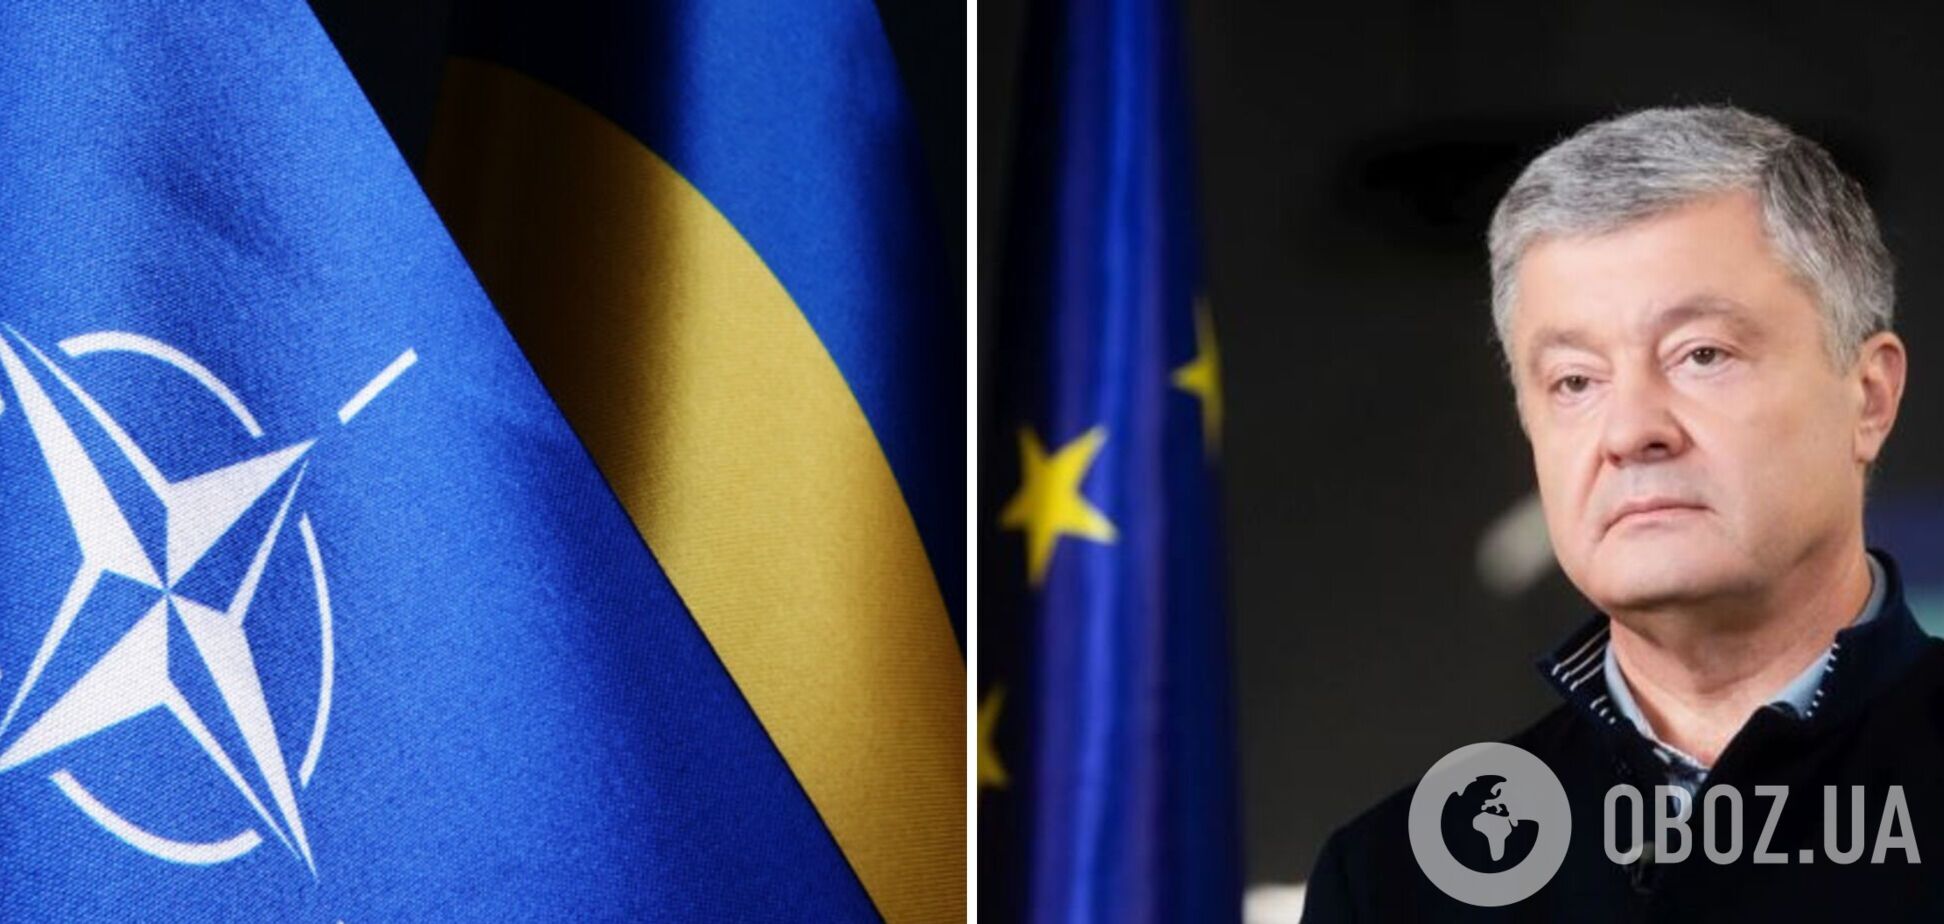 Без членства Украины в НАТО эта война не закончится, – Порошенко